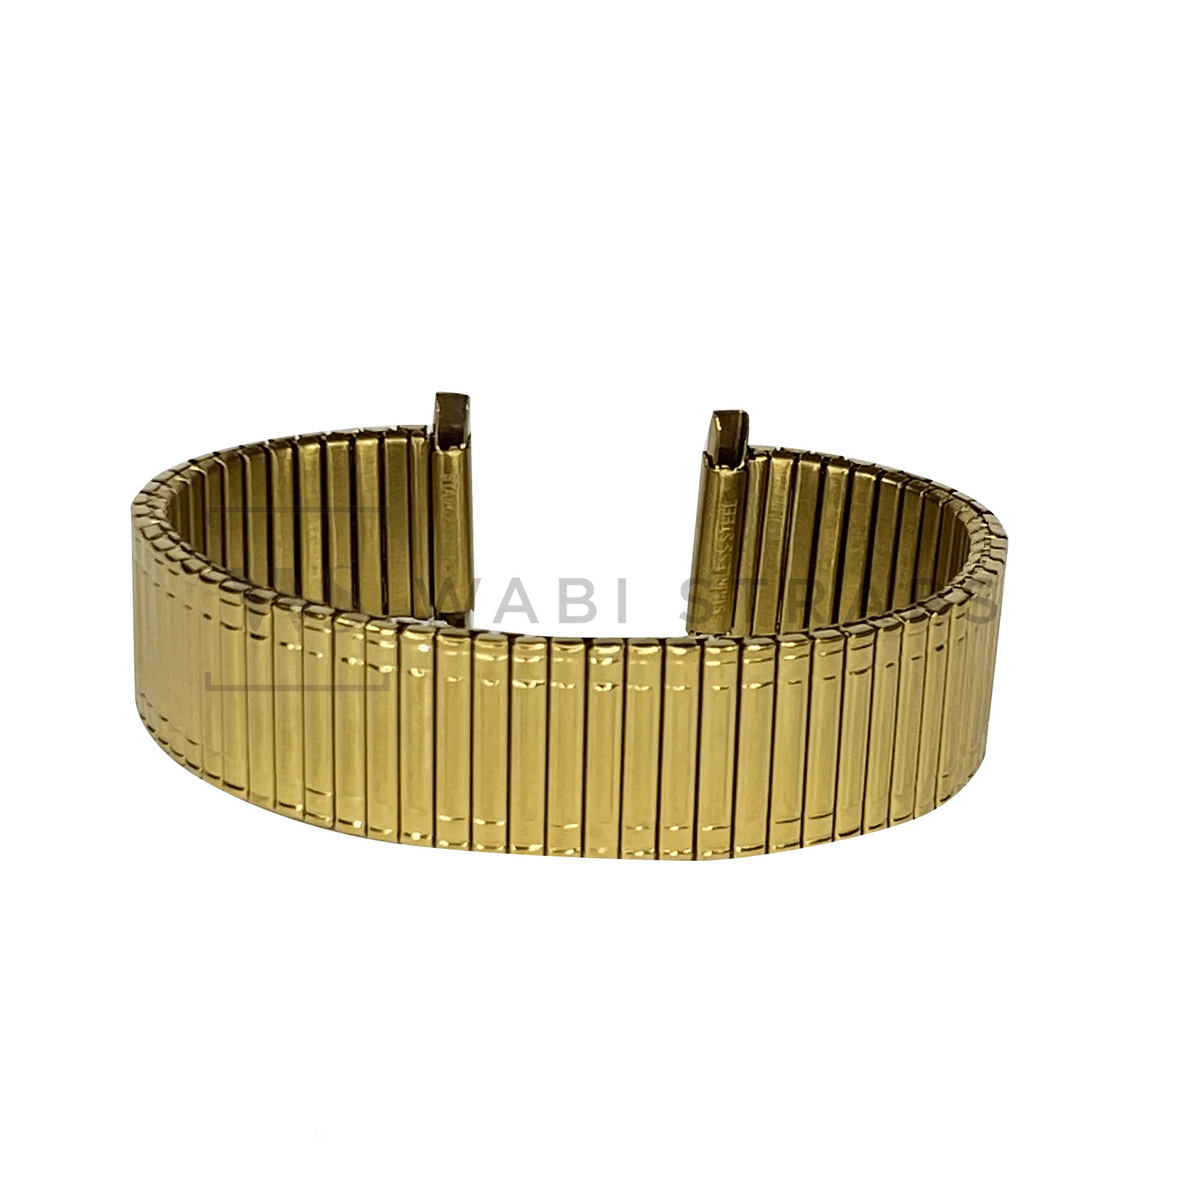 Gold Stretch Elastic Bracelet wabistraps - Watch